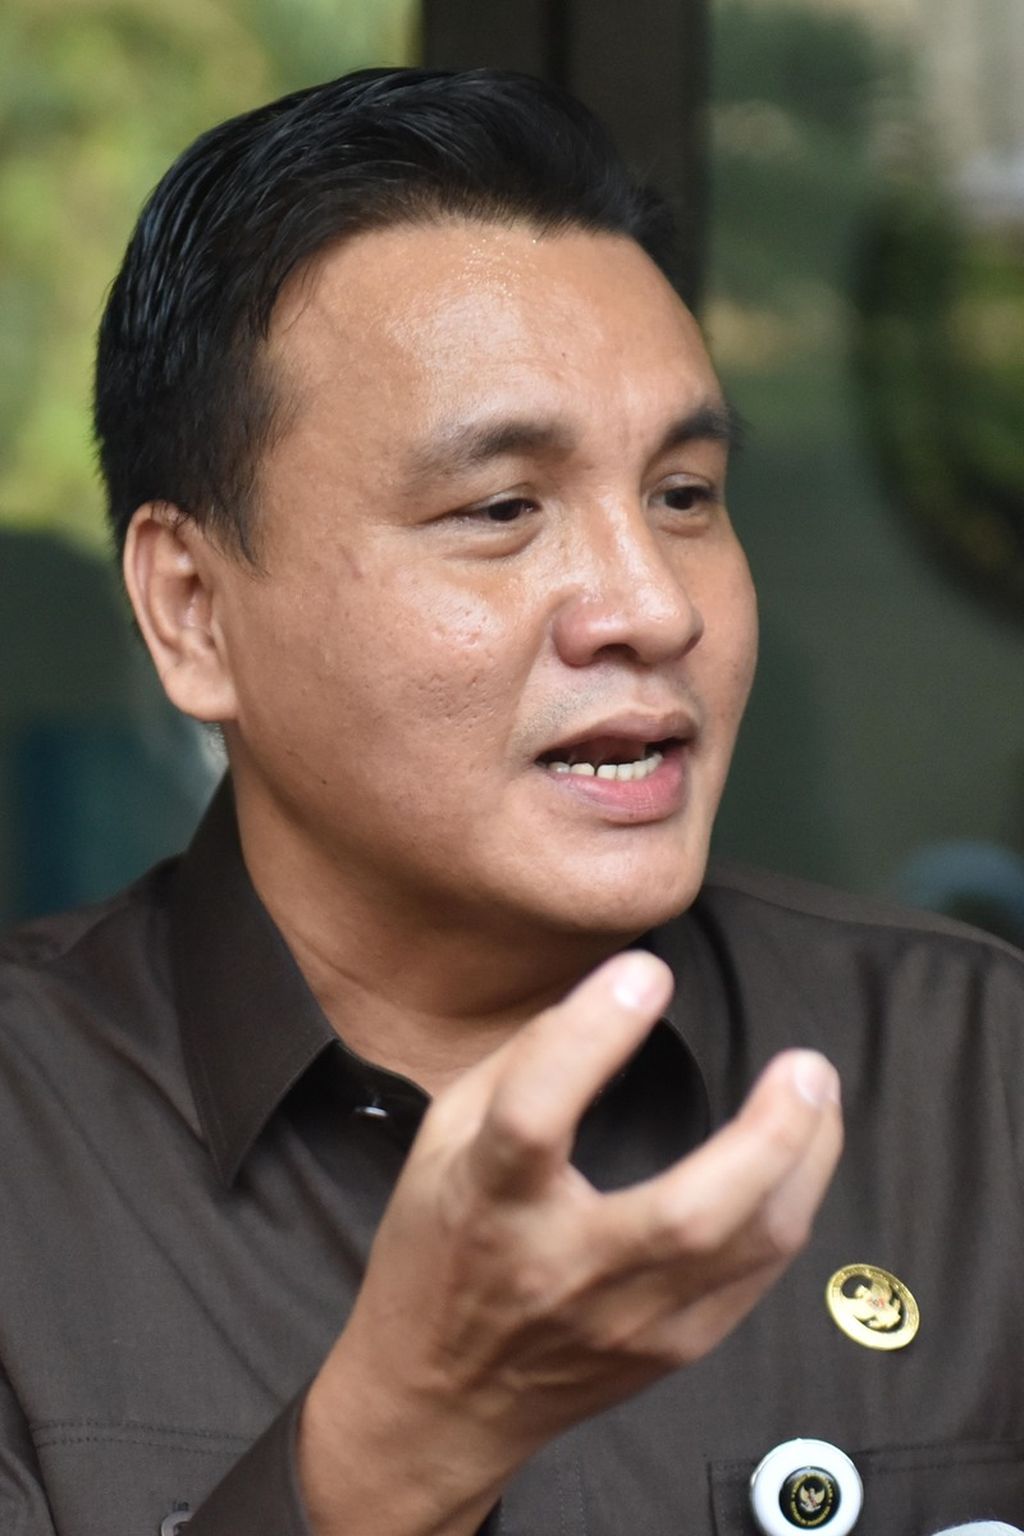 Ketua Komisi Kejaksaan (Komjak) RI Barita Simanjutak memberikan keterangan terkait pemanggilan tujuh jaksa penuntut umum (JPU) ke Kantor Komjak RI, Kebayoran Baru, Jakarta, Kamis (23/7/2020). 